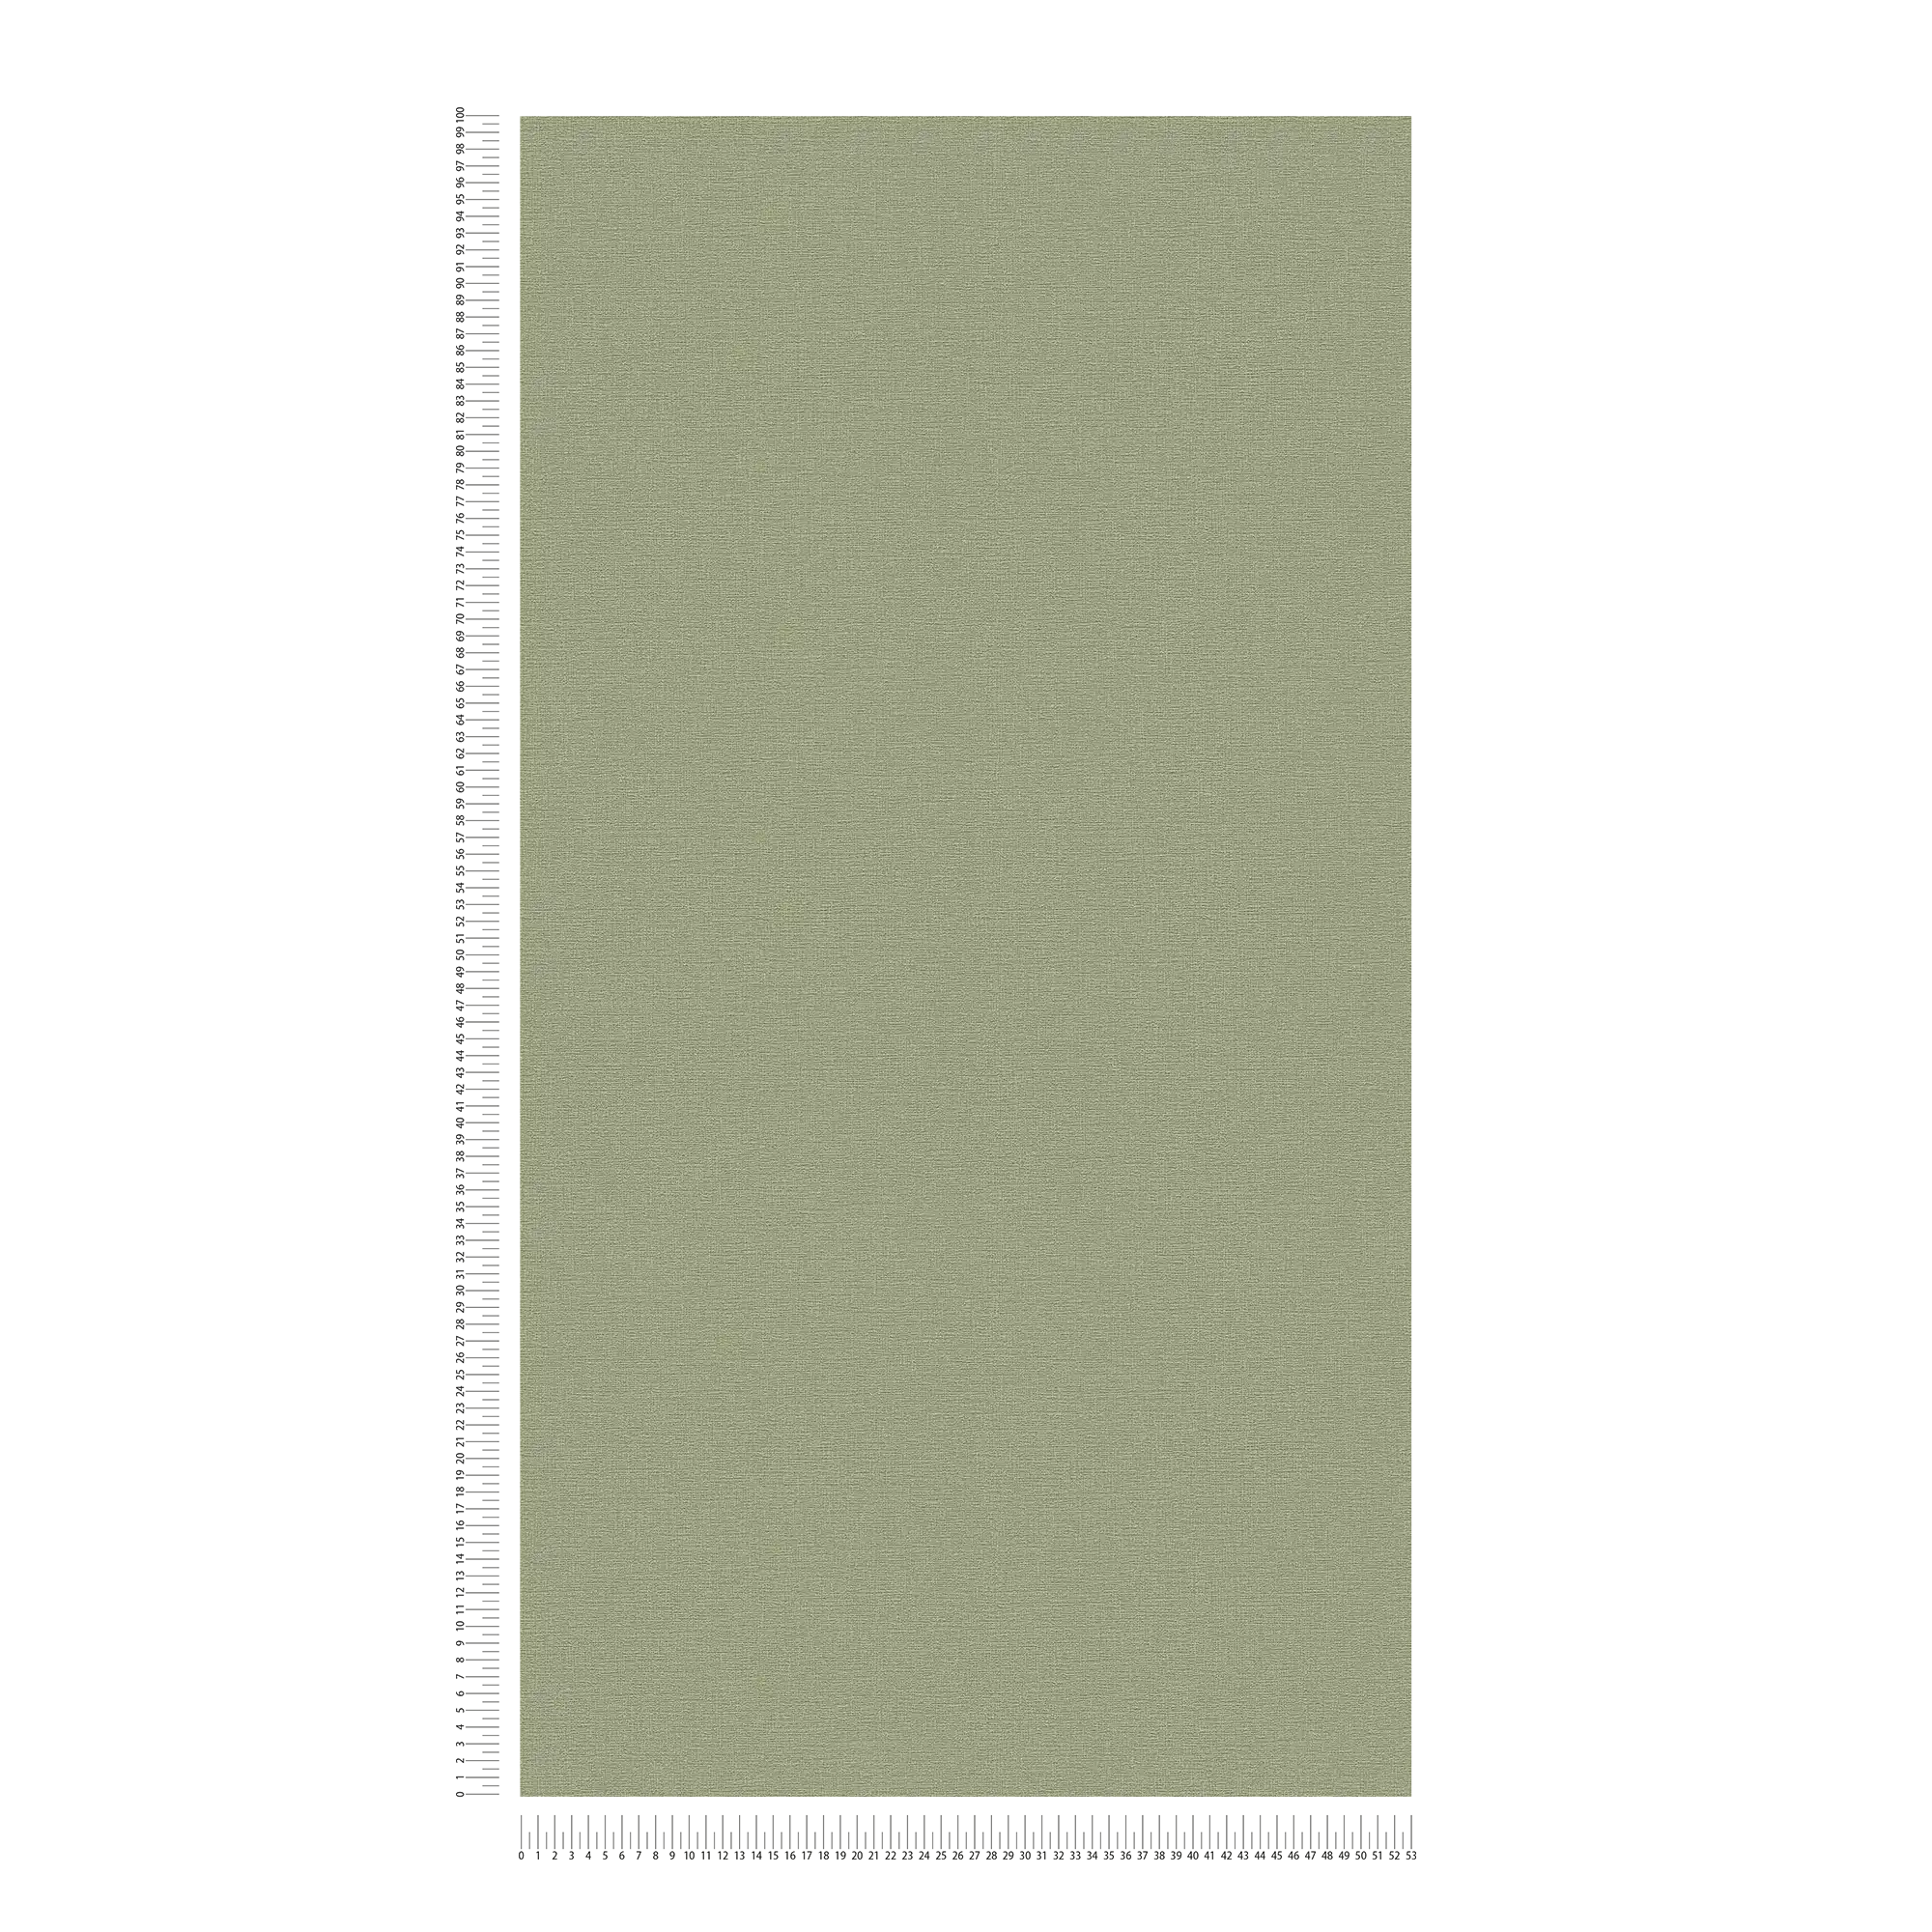             Khaki Behang Eucalyptus Groen met Textuur Patroon
        